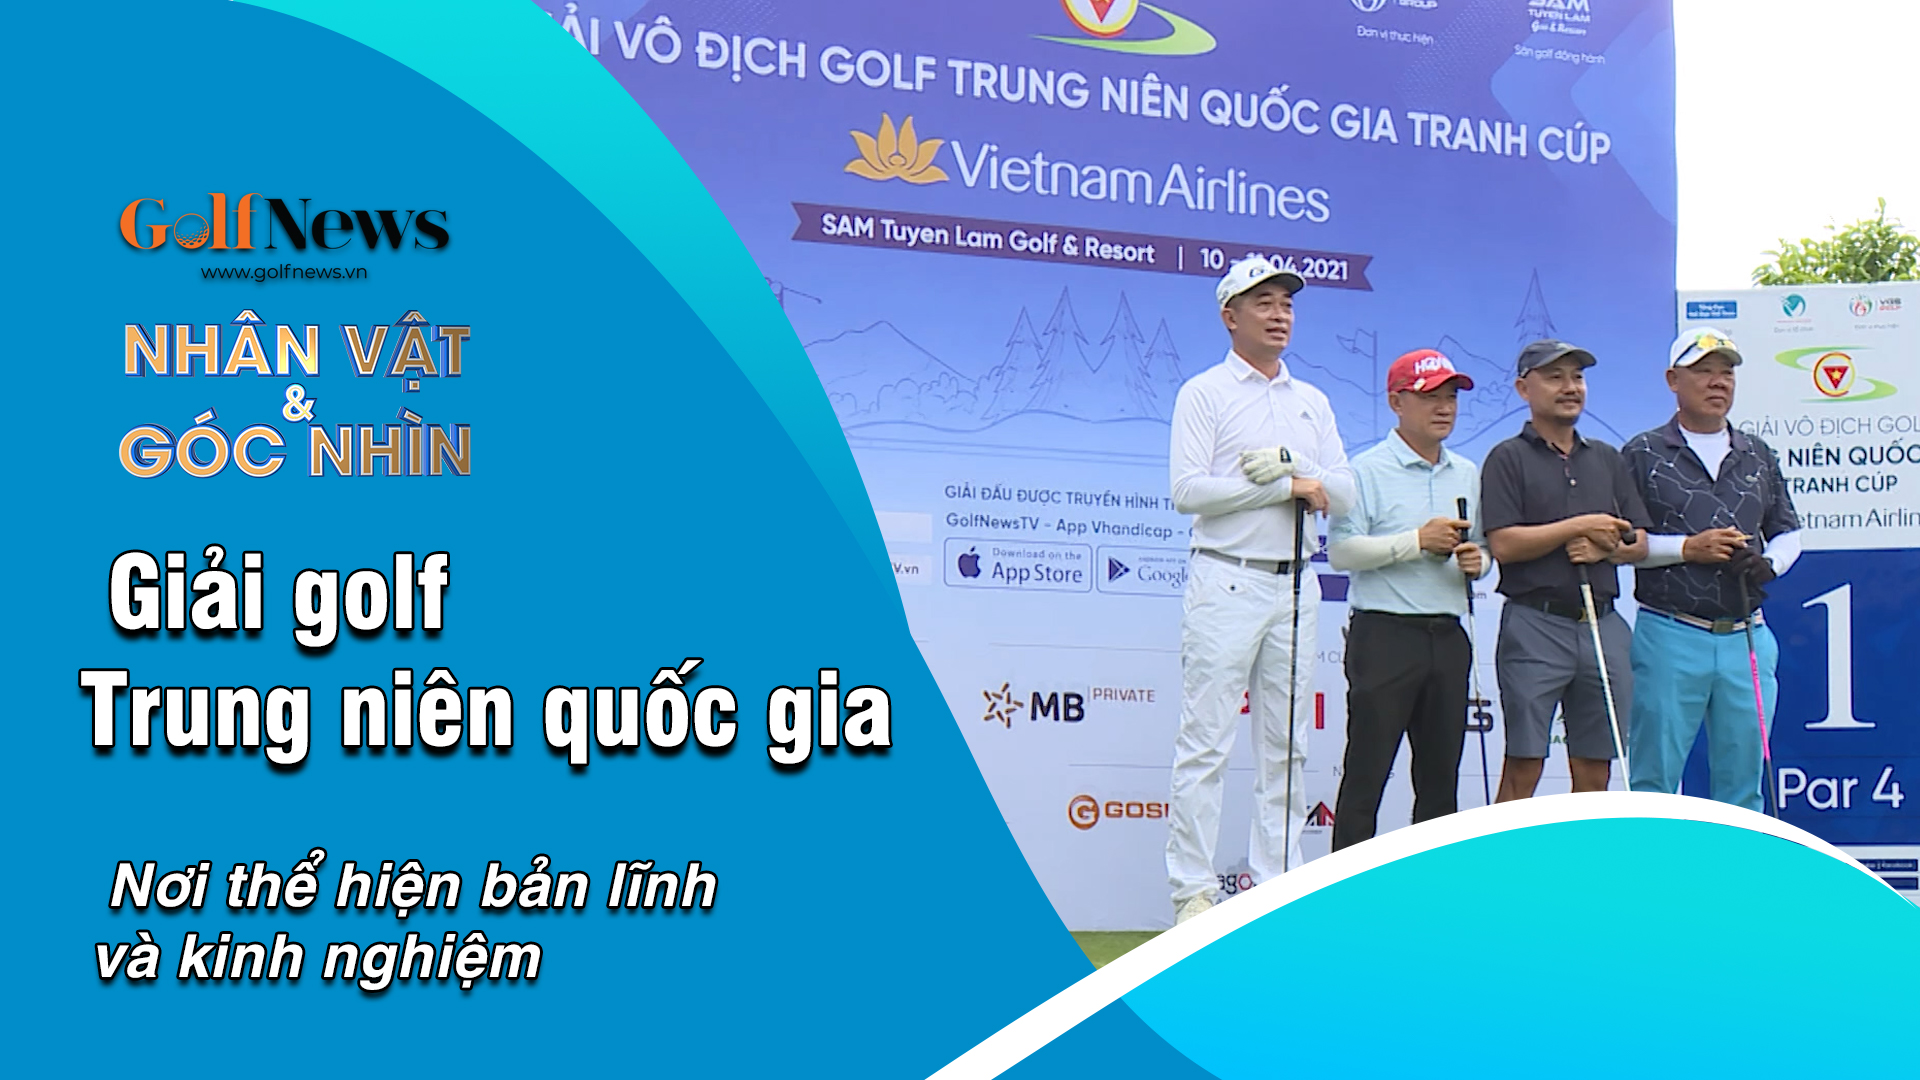 Giải Vô địch Golf Trung niên Quốc gia tranh Cup VietnamAirlines 2021 – Nơi thể hiện bản lĩnh và kinh nghiệm